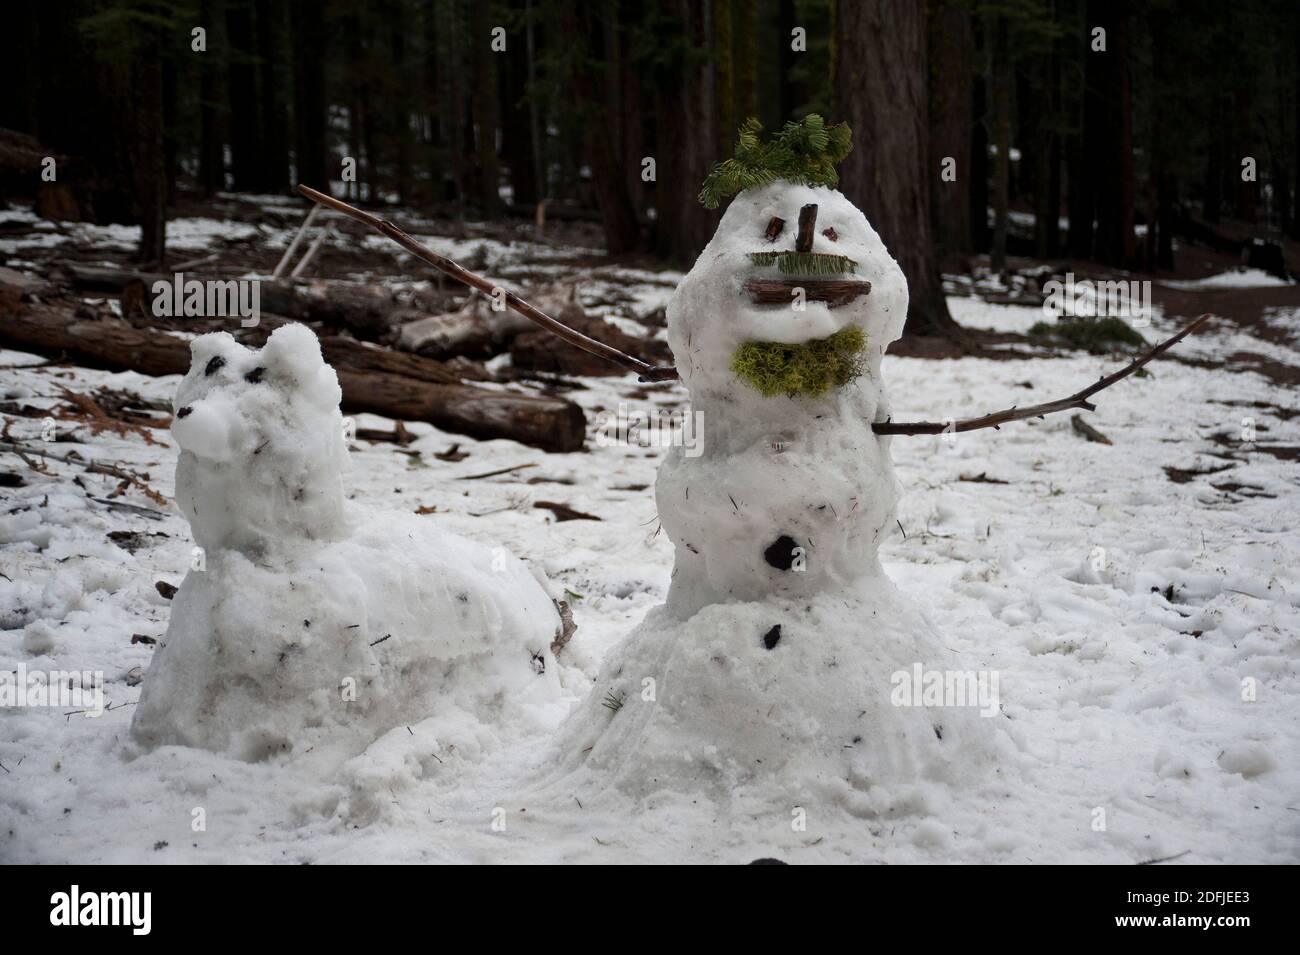 Bonhomme de neige et chien de neige entouré de bois Banque D'Images